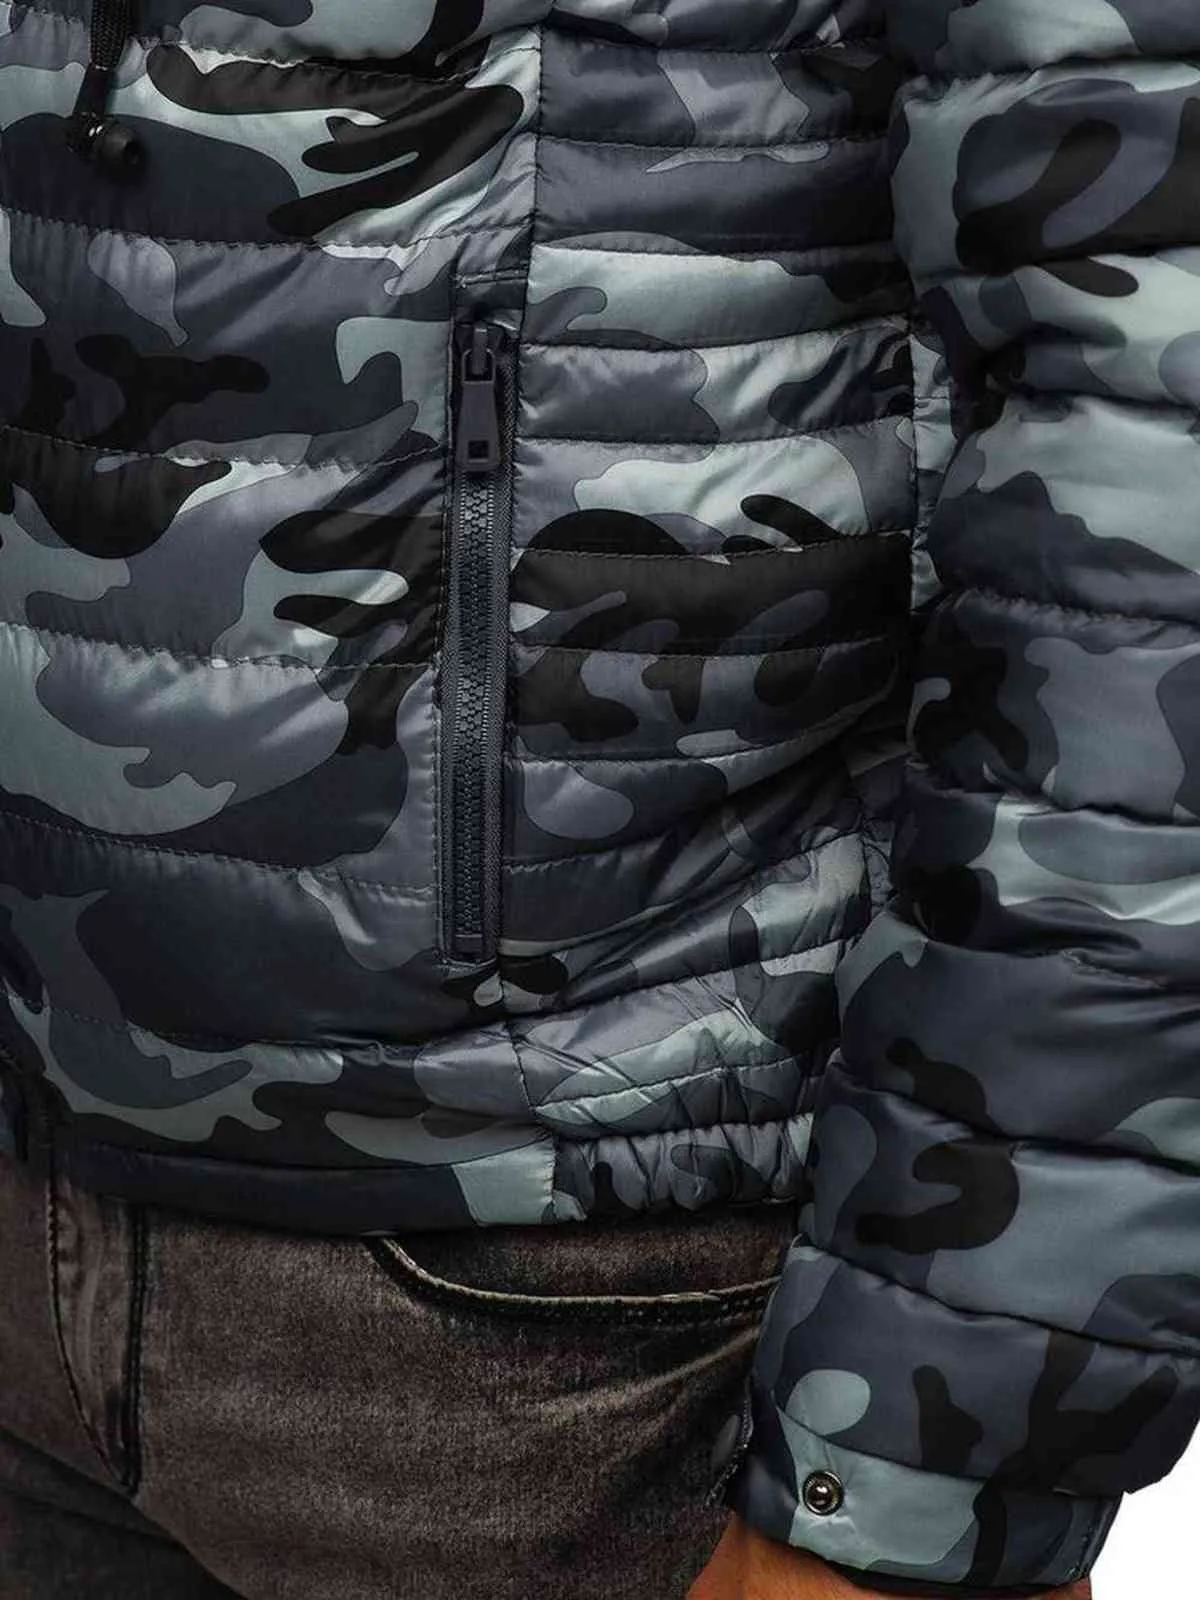 Zogaa elegante camuflagem camuflagem zíper com capuz jaqueta de algodão quente 211104